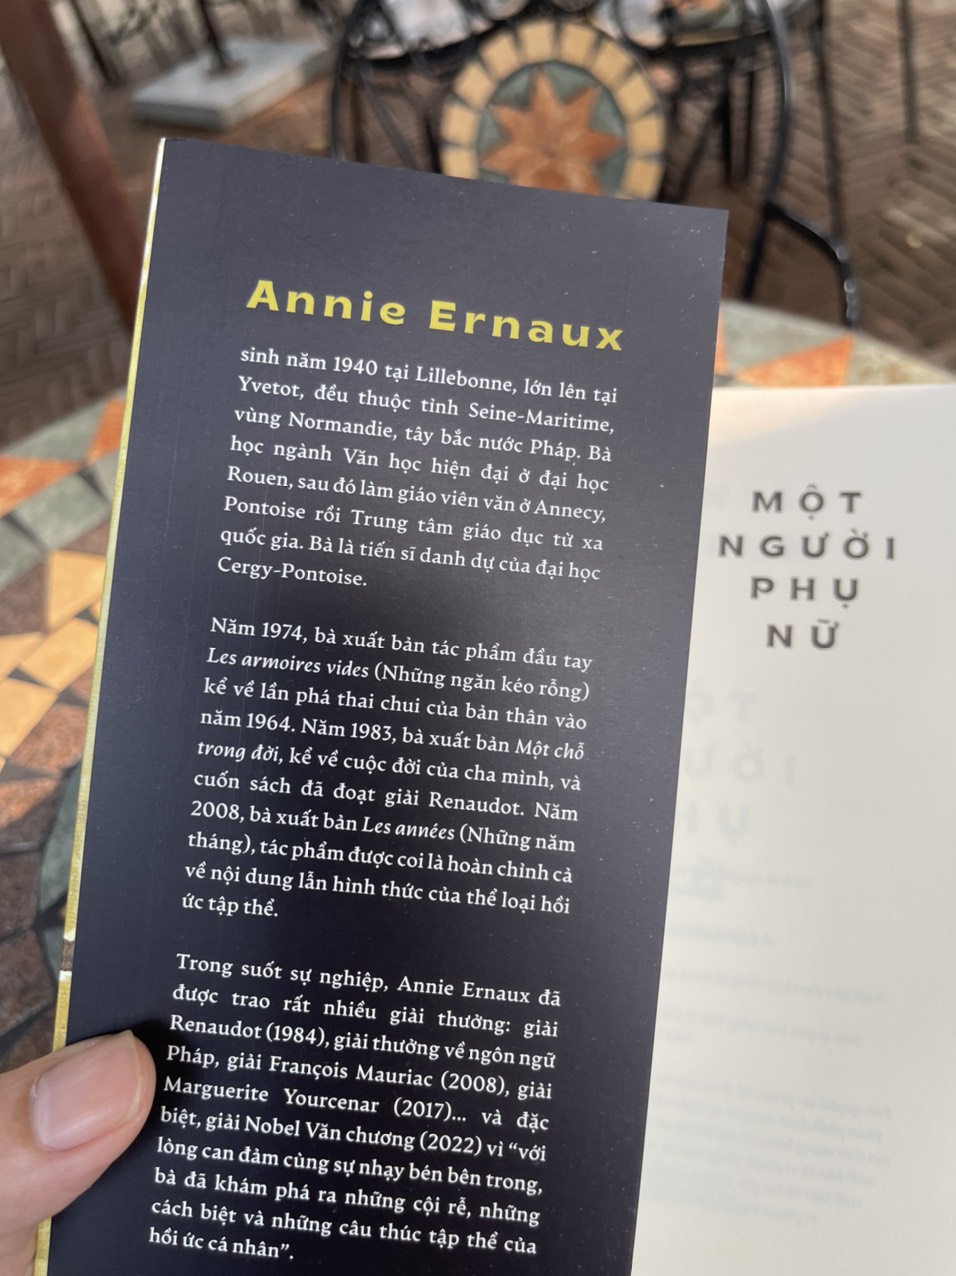 (Tác giả đoạt giải Nobel Văn chương năm 2022) MỘT NGƯỜI PHỤ NỮ – Annie Ernaux – Thu Phương dịch - Nhã Nam - NXB Phụ nữ 